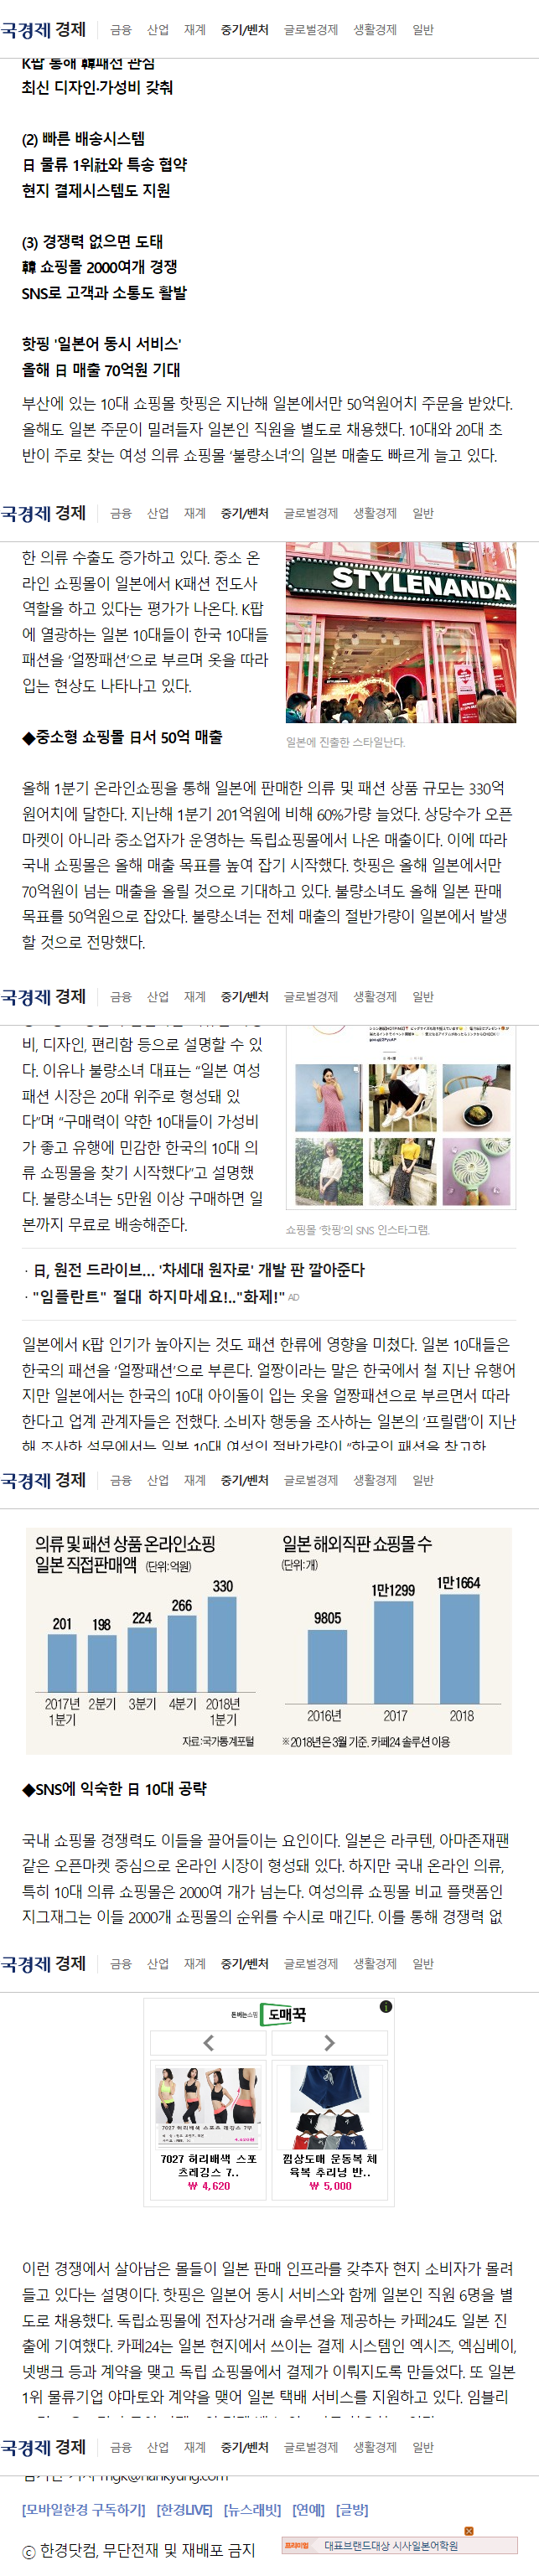 중소형 K패션몰, '얼짱 패션'으로 日 10대 사로잡다